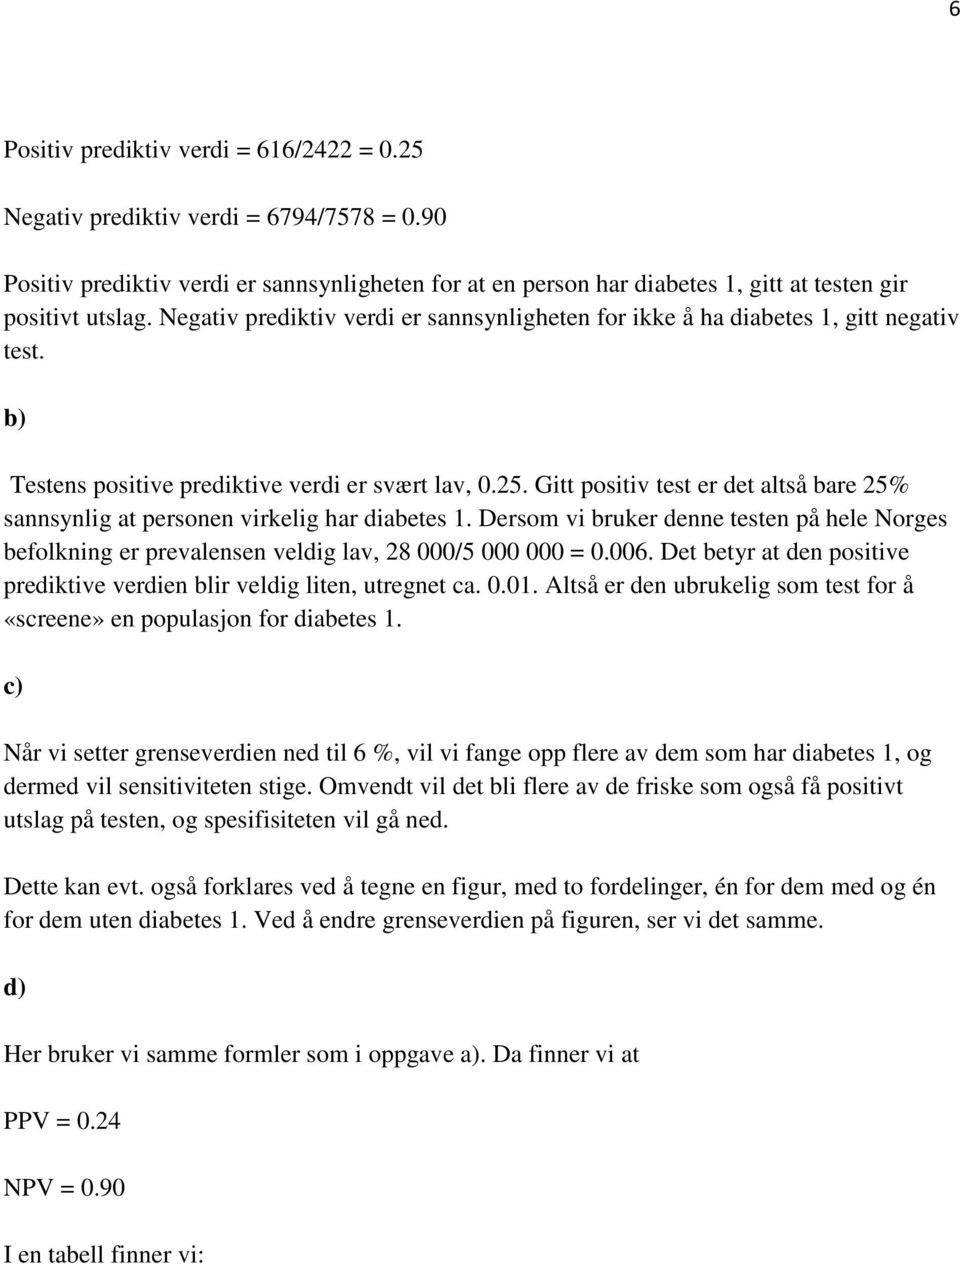 Gitt positiv test er det altså bare 25% sannsynlig at personen virkelig har diabetes 1. Dersom vi bruker denne testen på hele Norges befolkning er prevalensen veldig lav, 28 000/5 000 000 = 0.006.